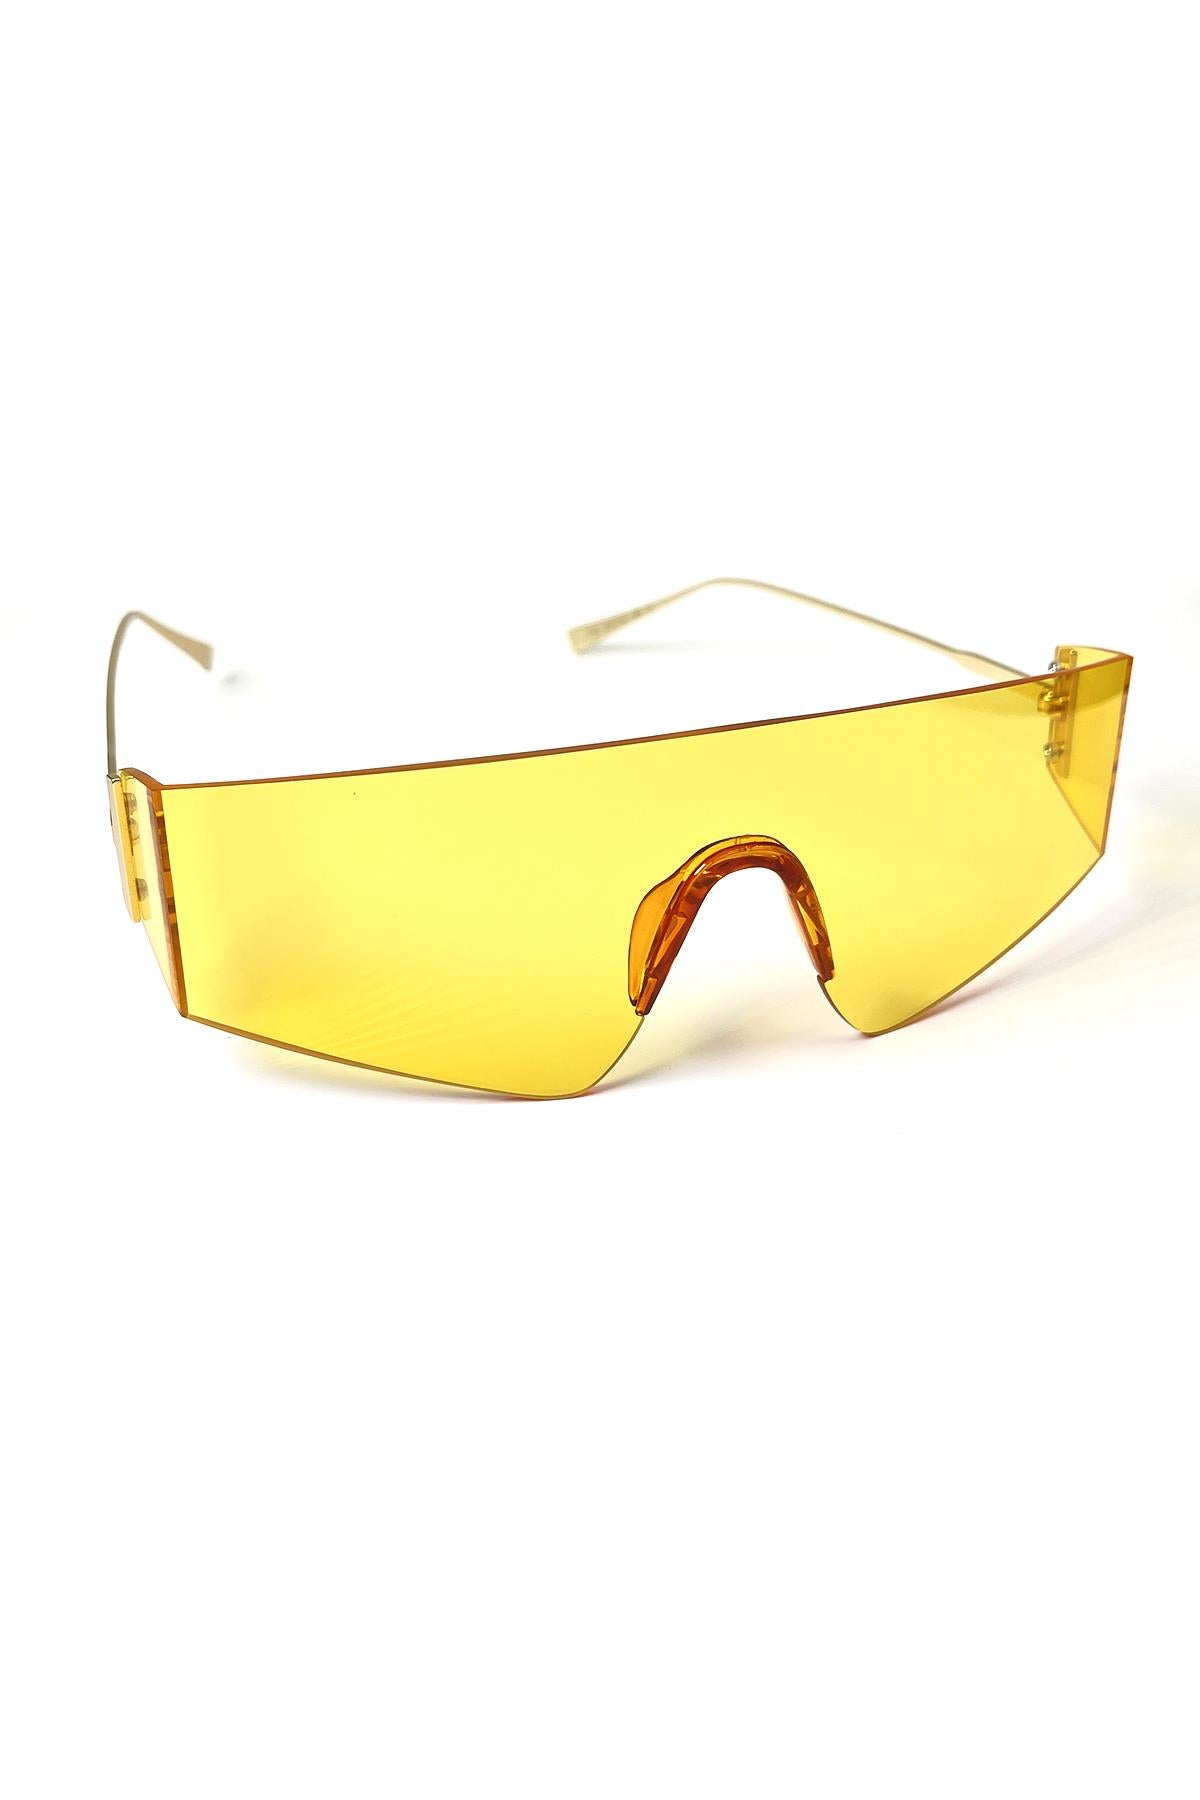 FRNCH Altın Sap Sarı Cam Dikdörtgen Model Erkek Güneş Gözlüğü FRG1040-140-S